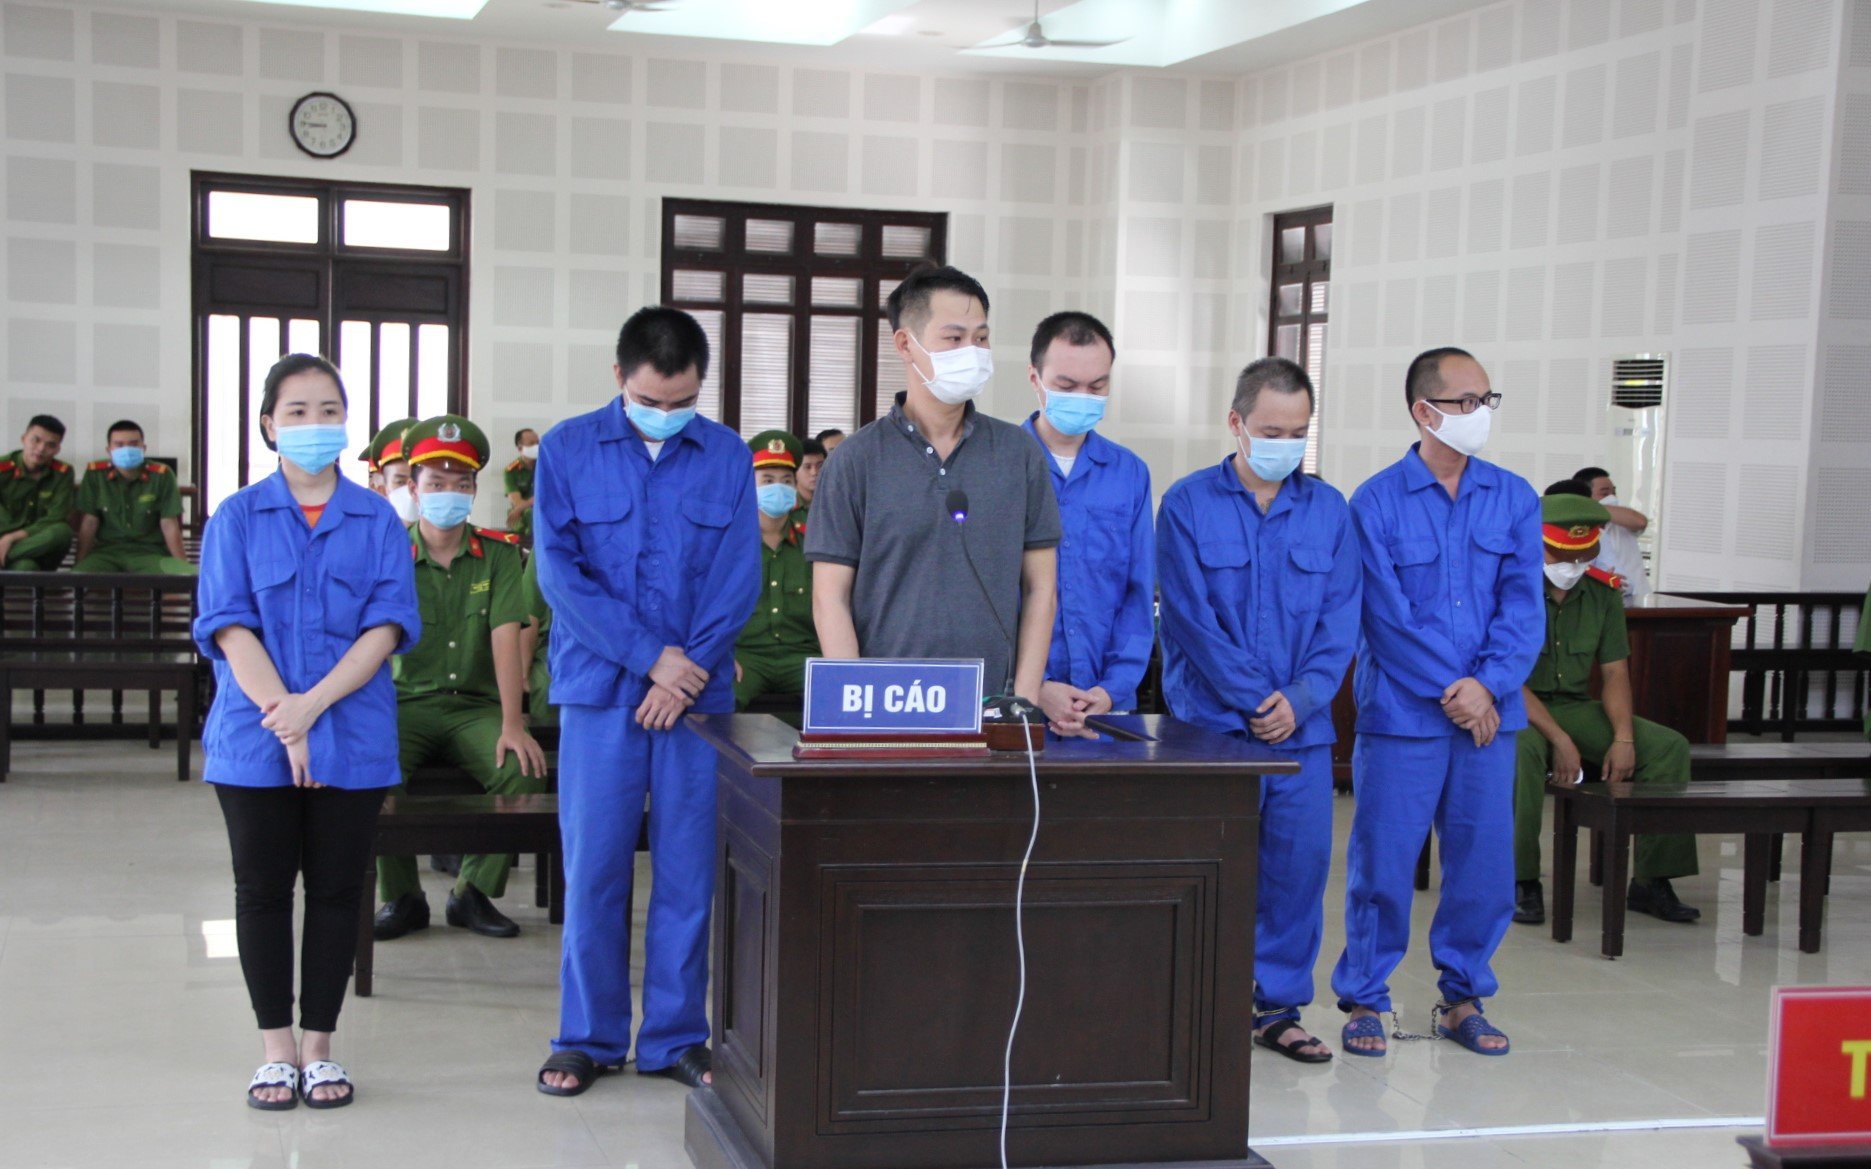 Cán bộ nhận hối lộ, tiếp tay chuyên gia nước ngoài rởm ở chui tại Đà Nẵng